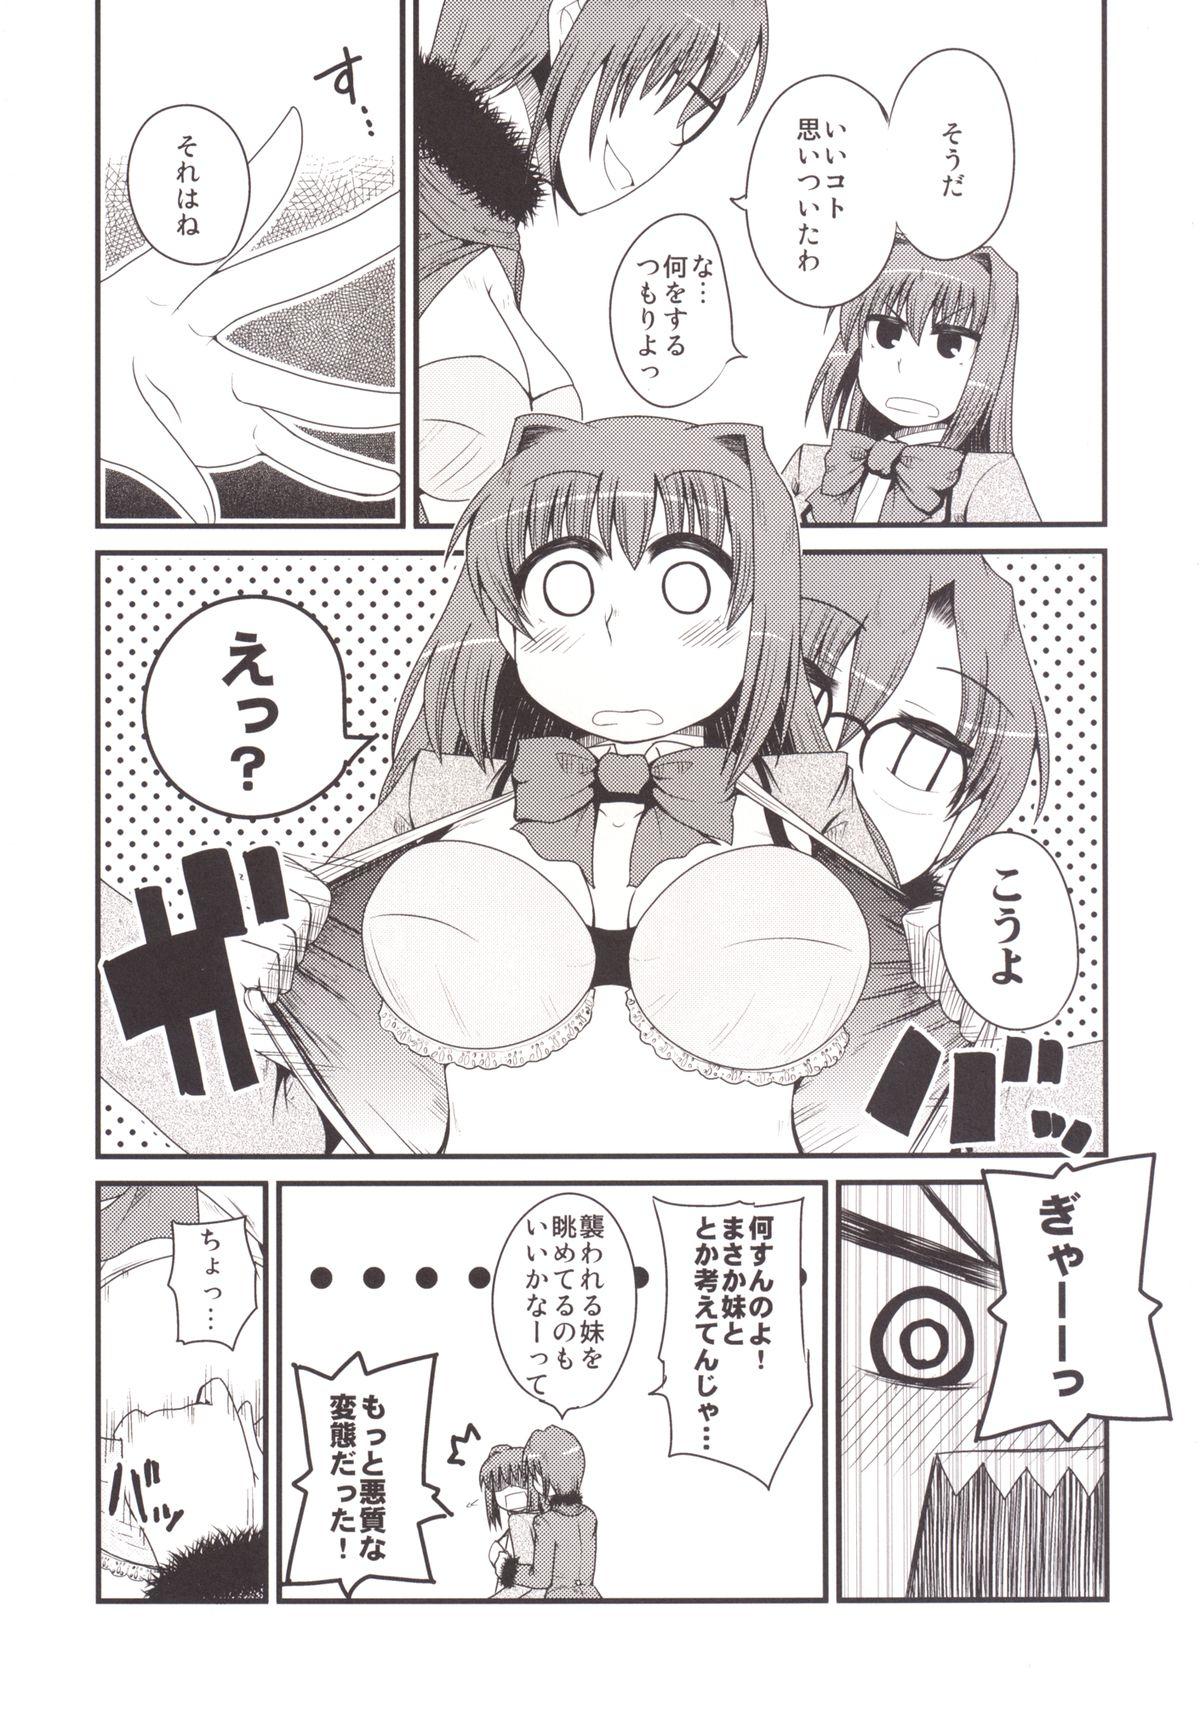 Travesti Ittsu Main 2 - Mahou tsukai no yoru Pica - Page 9